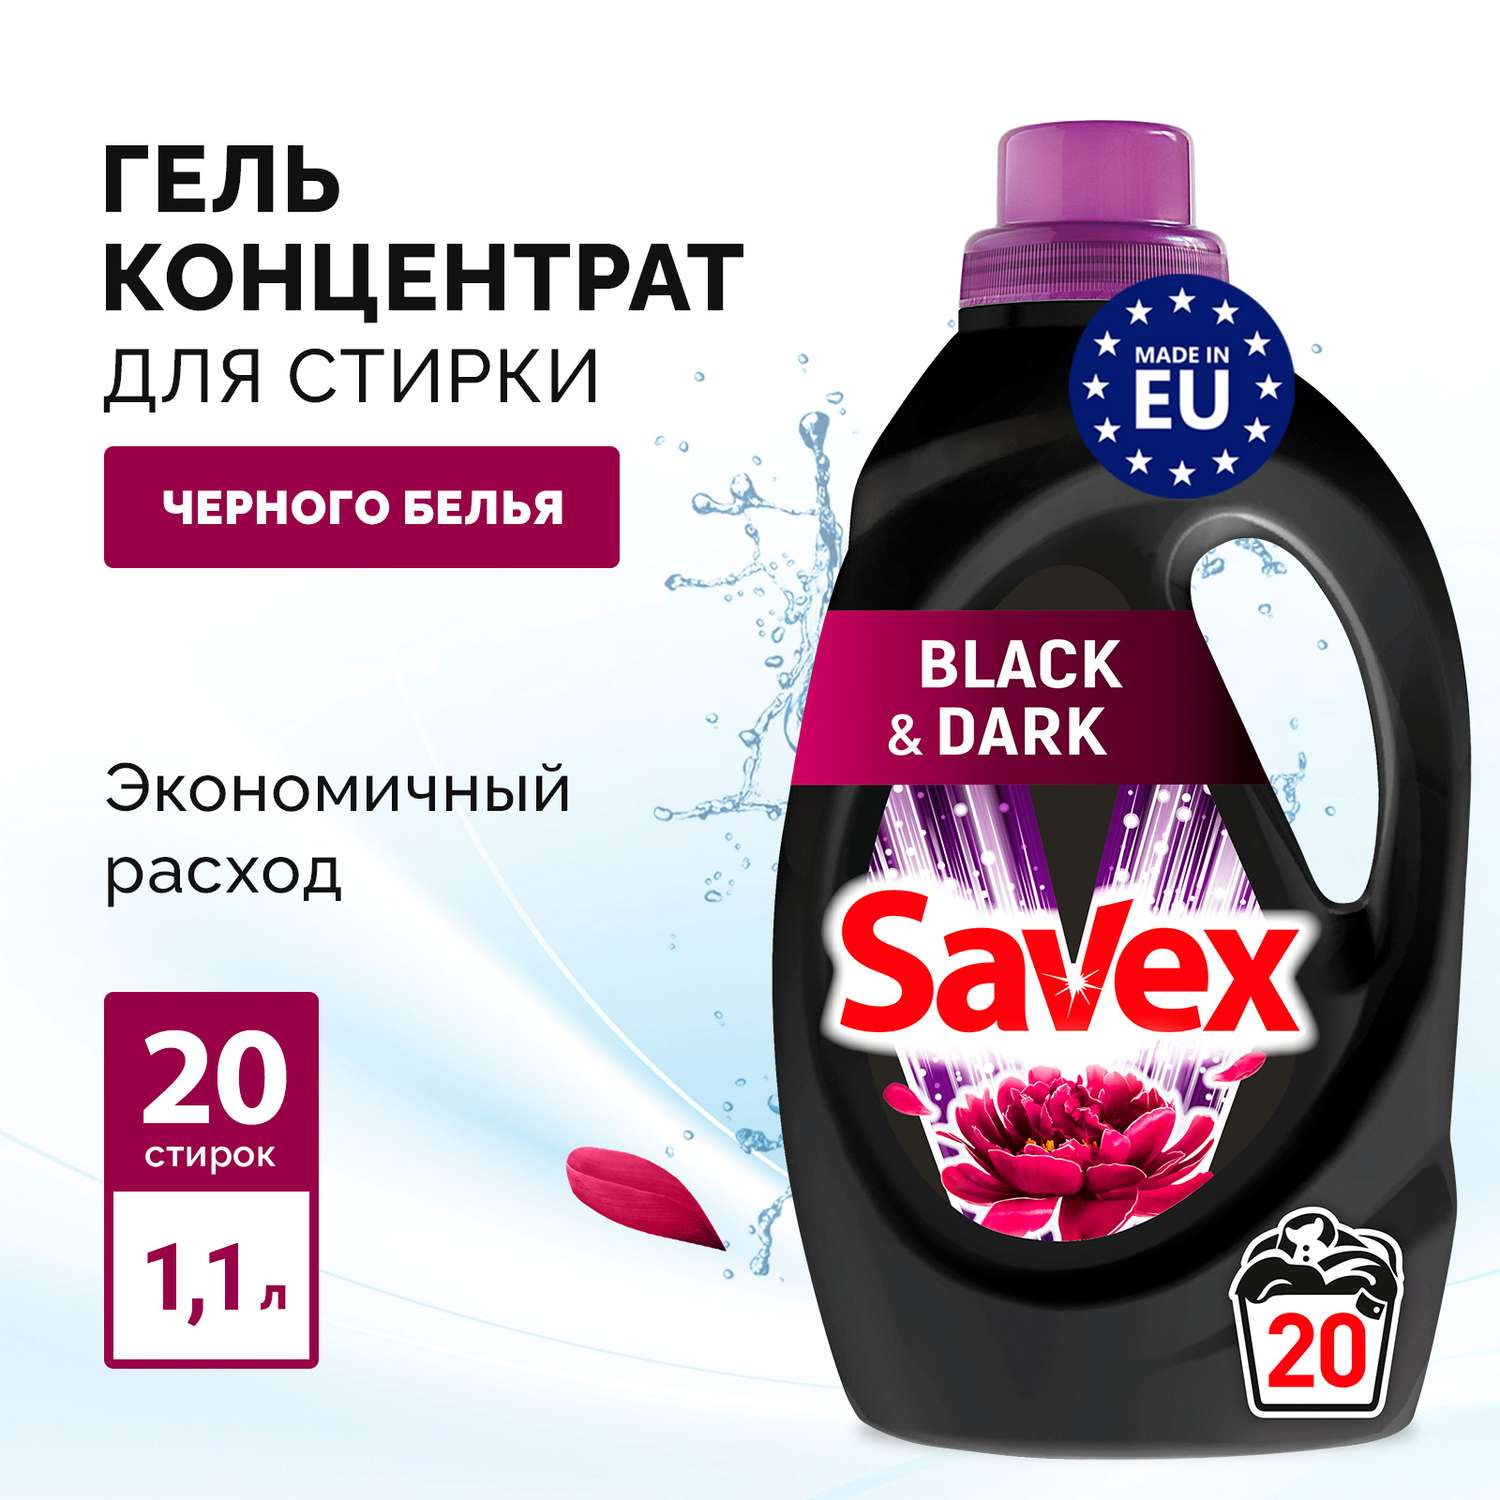 Гель для стирки SAVEX для черного и темного белья 2 в 1 1л - фото 2